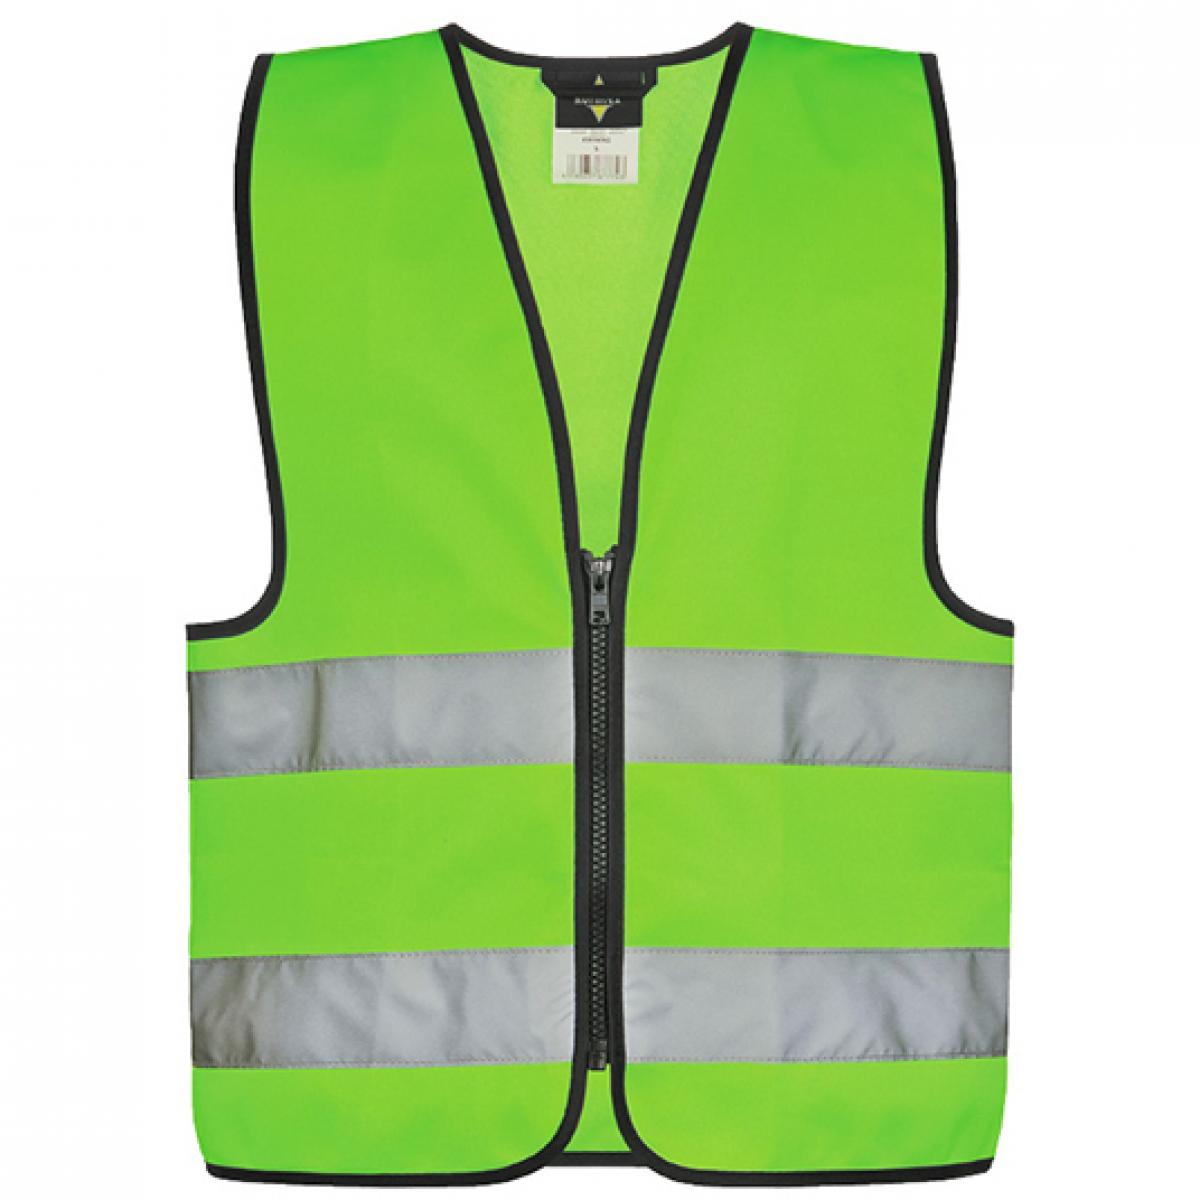 Hersteller: Korntex Herstellernummer: KWRX Artikelbezeichnung: Kinder Safety Vest for Kids with Zipper EN1150 Farbe: Neon Green